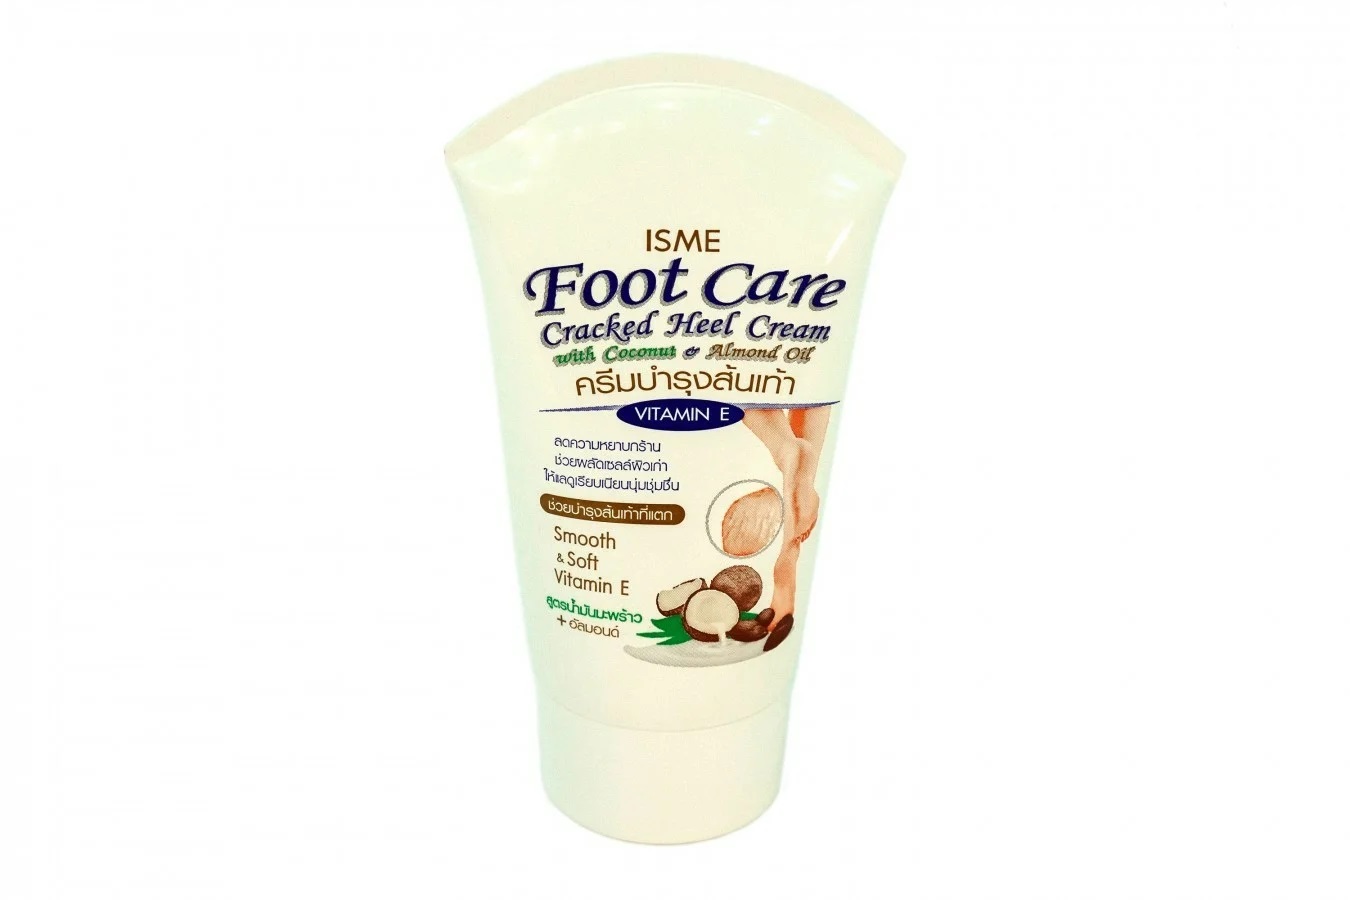 FOOT CARE Cracked Heel Cream, ISME (Крем для ног с маслом кокоса и миндаля, ИСМЕ), 80 г.